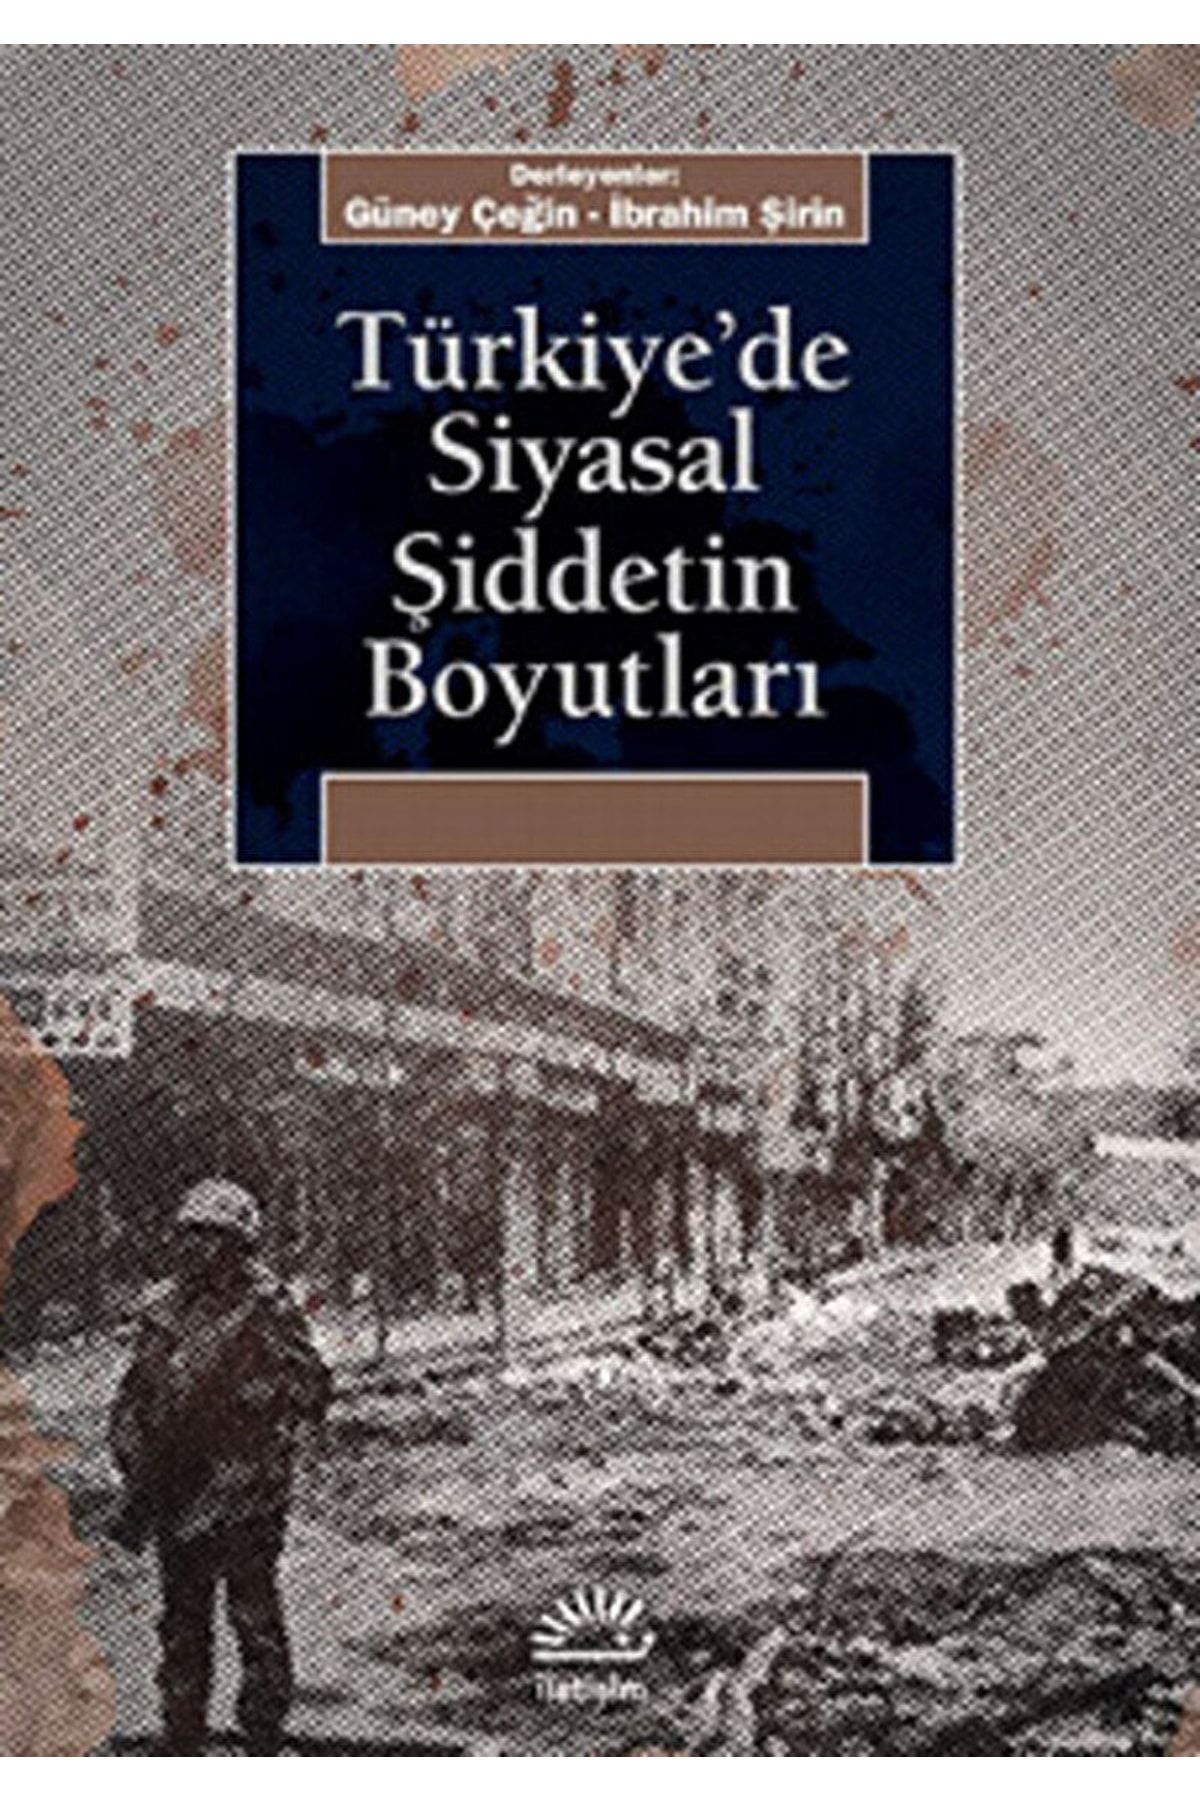 Genel Markalar Türkiye'de Siyasal Şiddetin Boyutları Güney Çeğin, Ibrahim Şirin (der.) Iletişim Yayınları